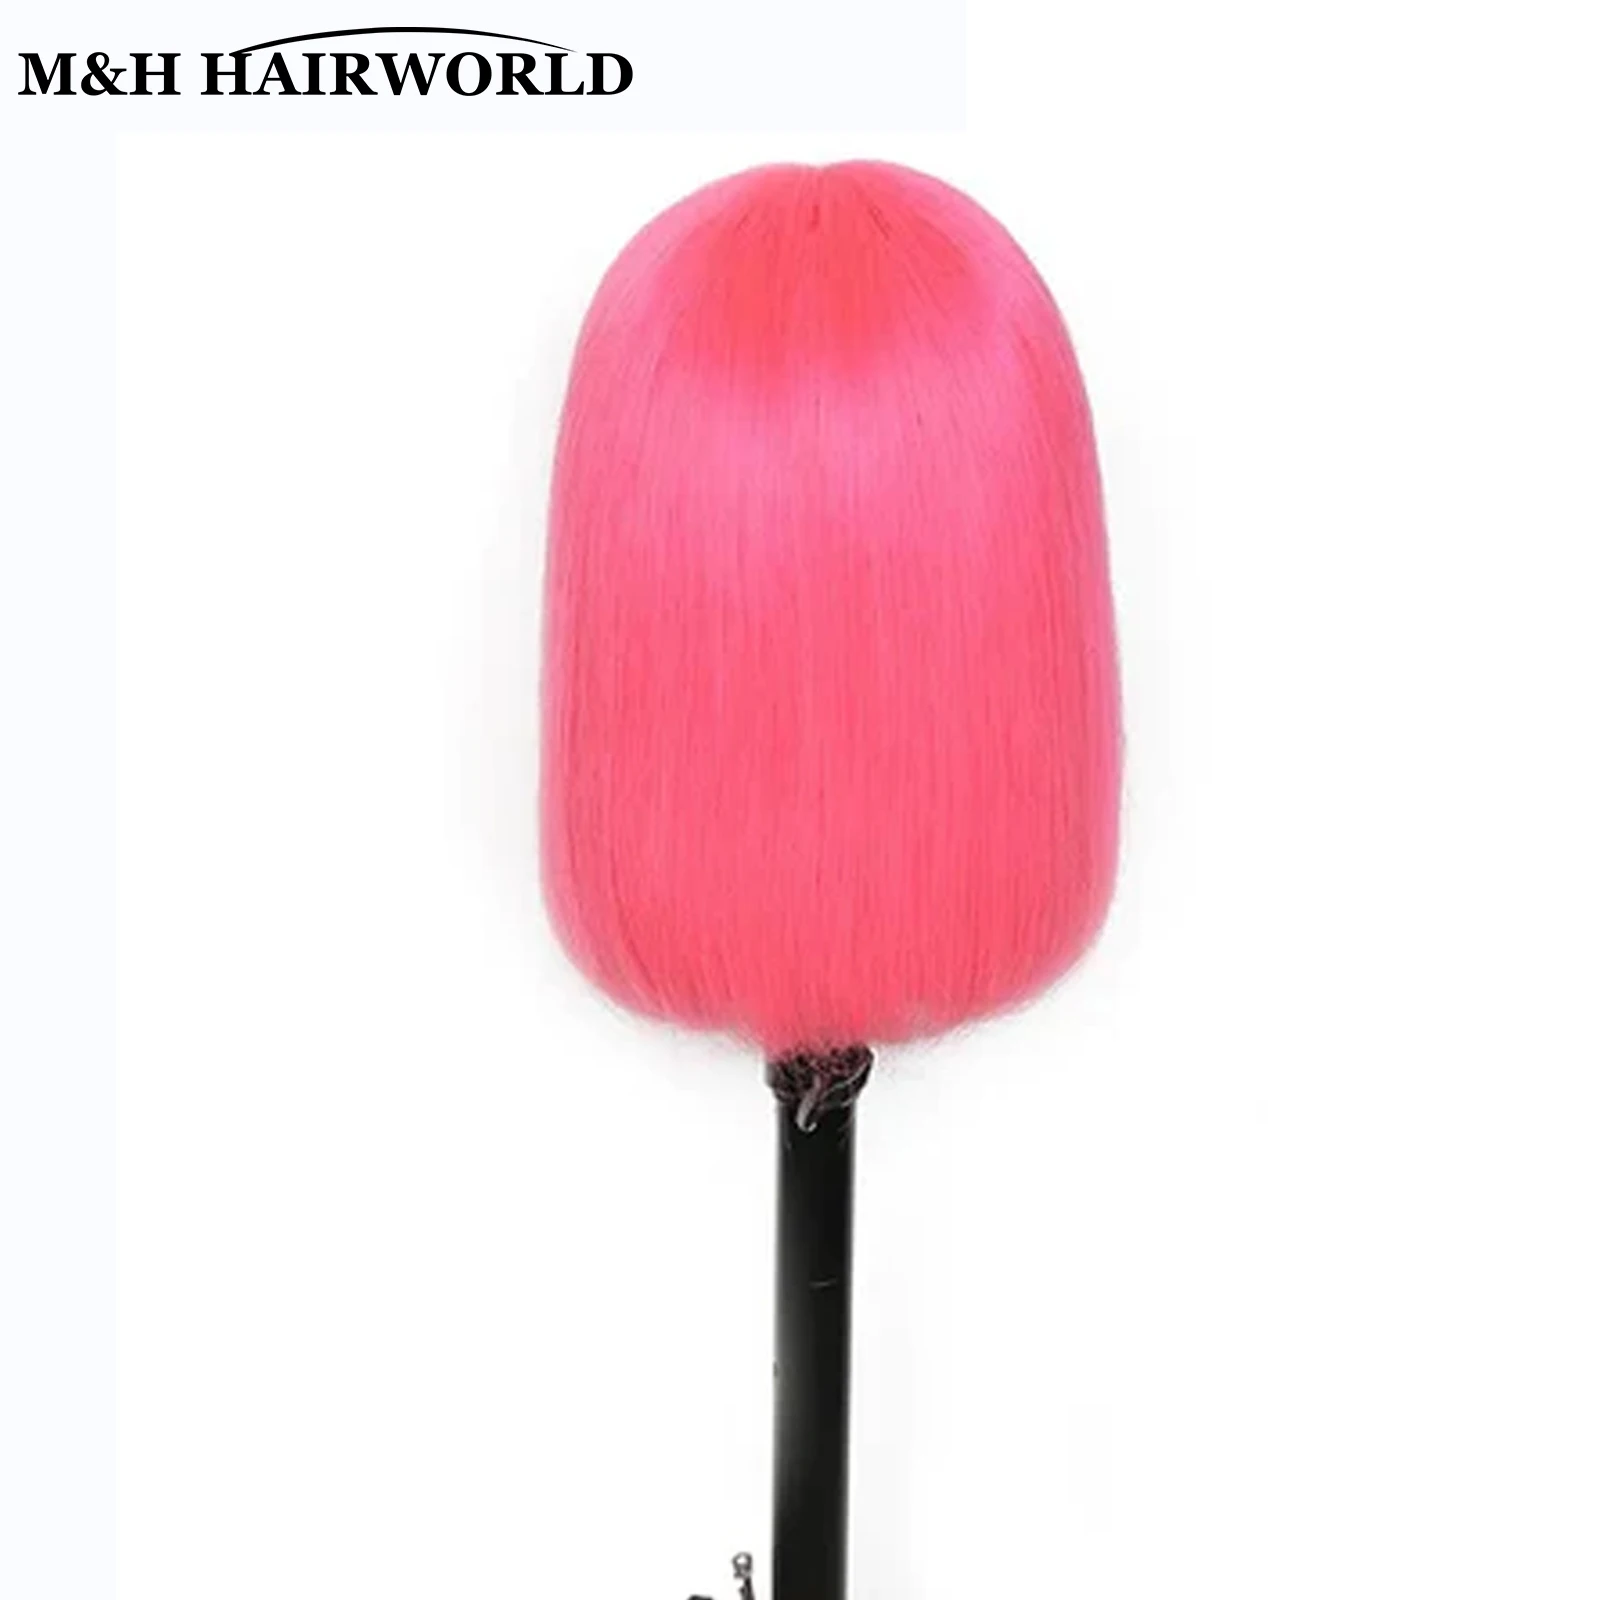 Pembe Renkli Sentetik sırma ön peruk Kadınlar İçin Cosplay Kısa Düz İsıya Dayanıklı Saç Bob Peruk Tutkalsız sırma ön peruk